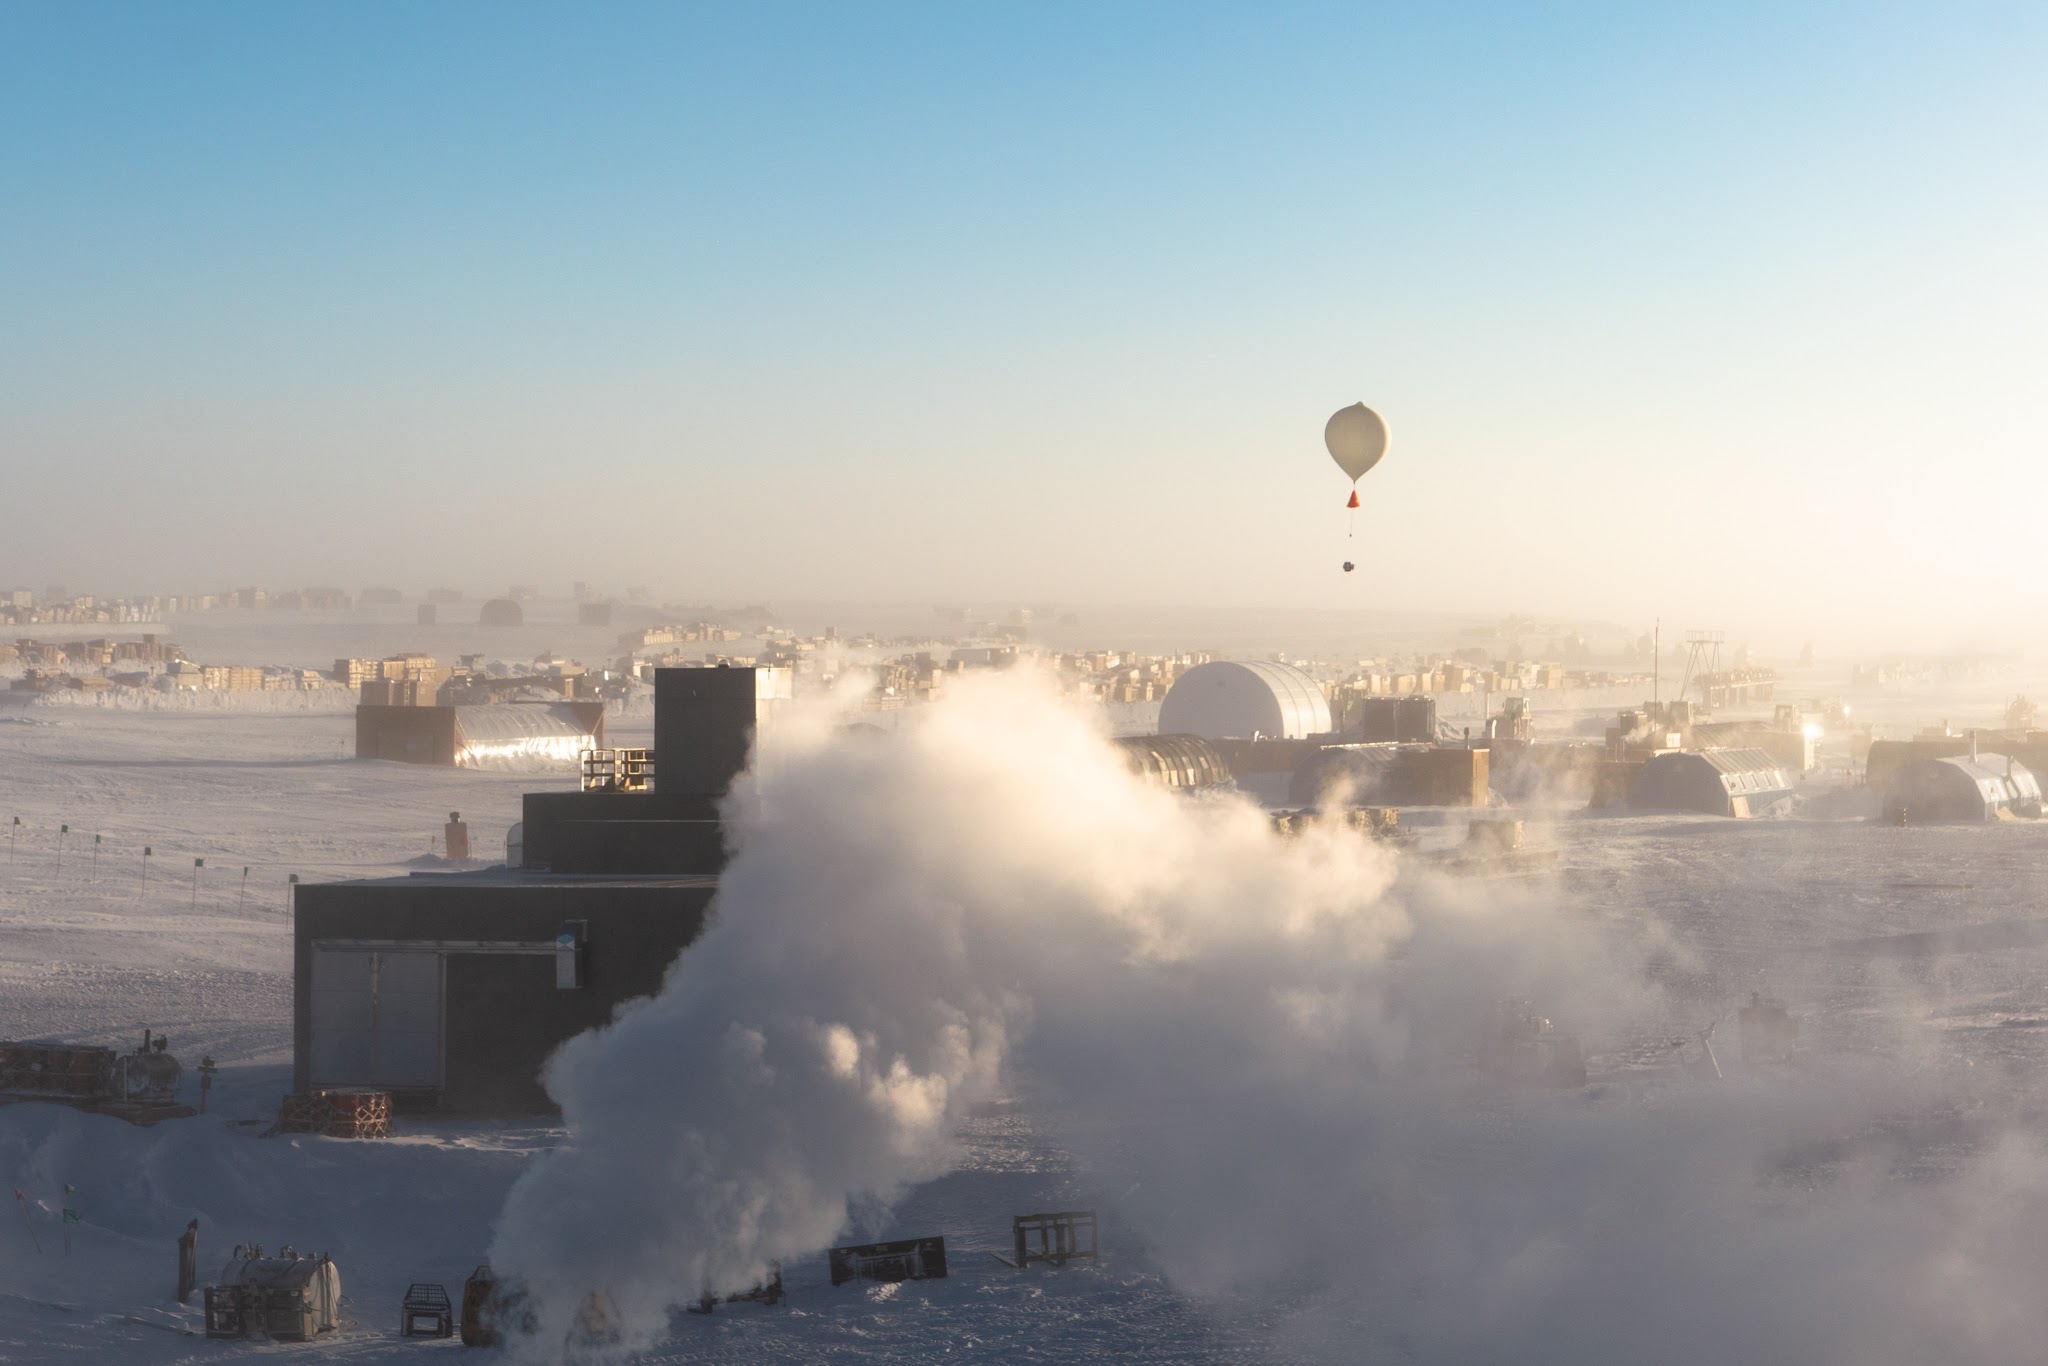 South Pole balloon flight